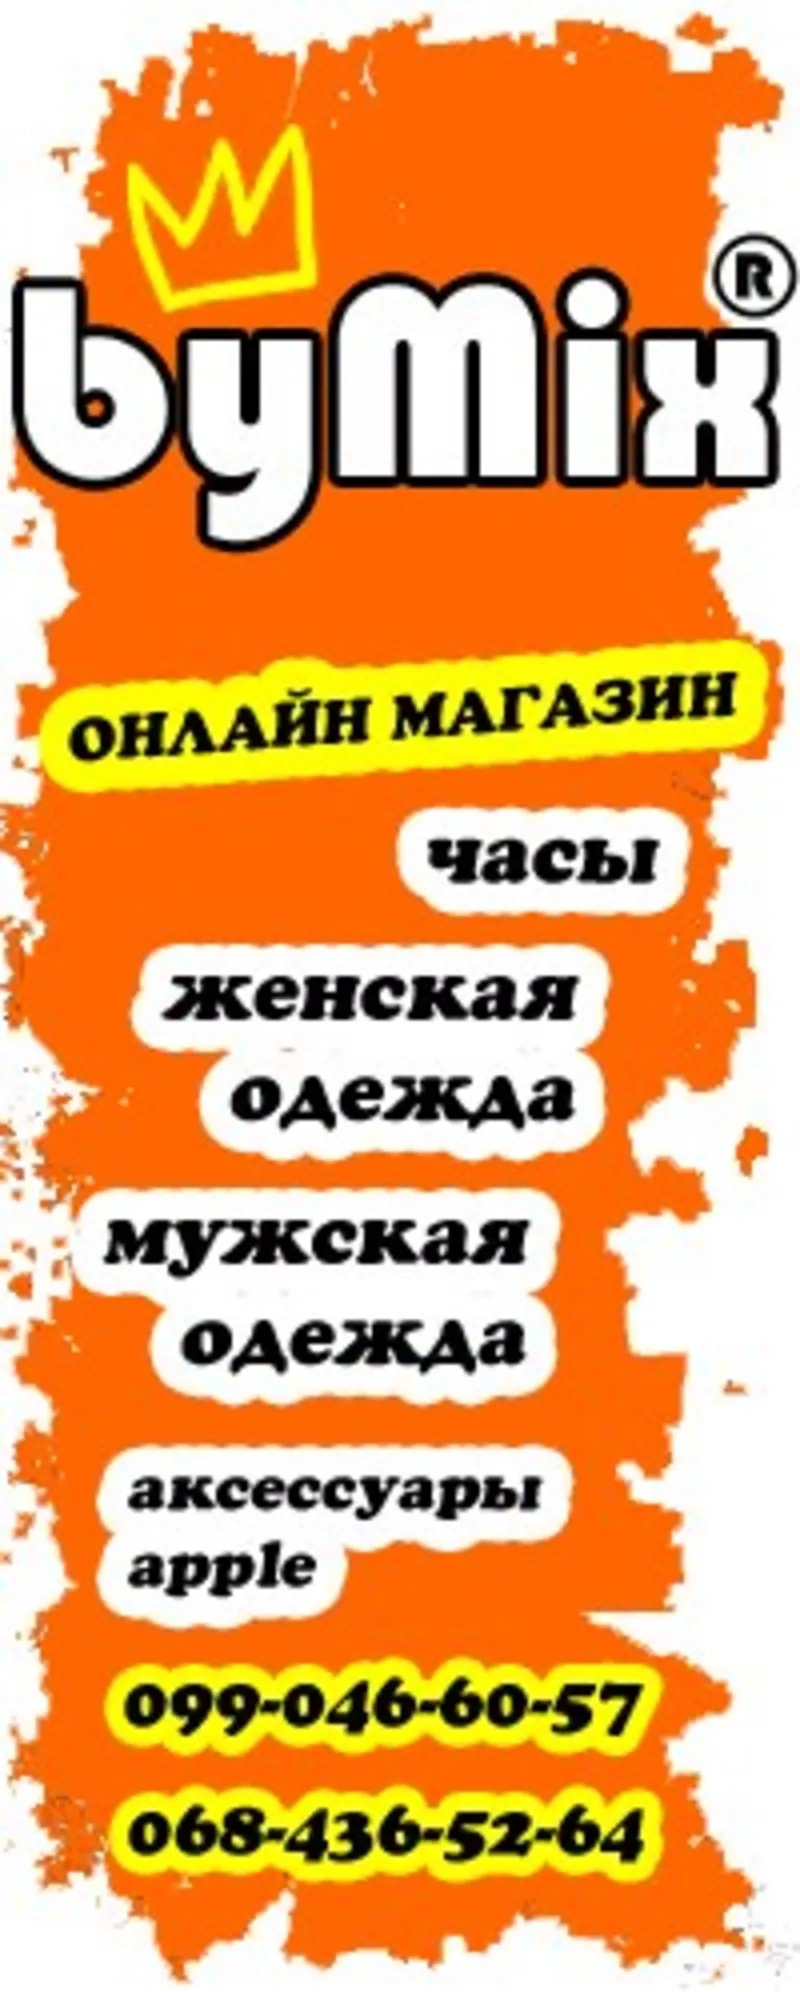 Интернет-магазин bymix.com.ua Симферополь,  Крым